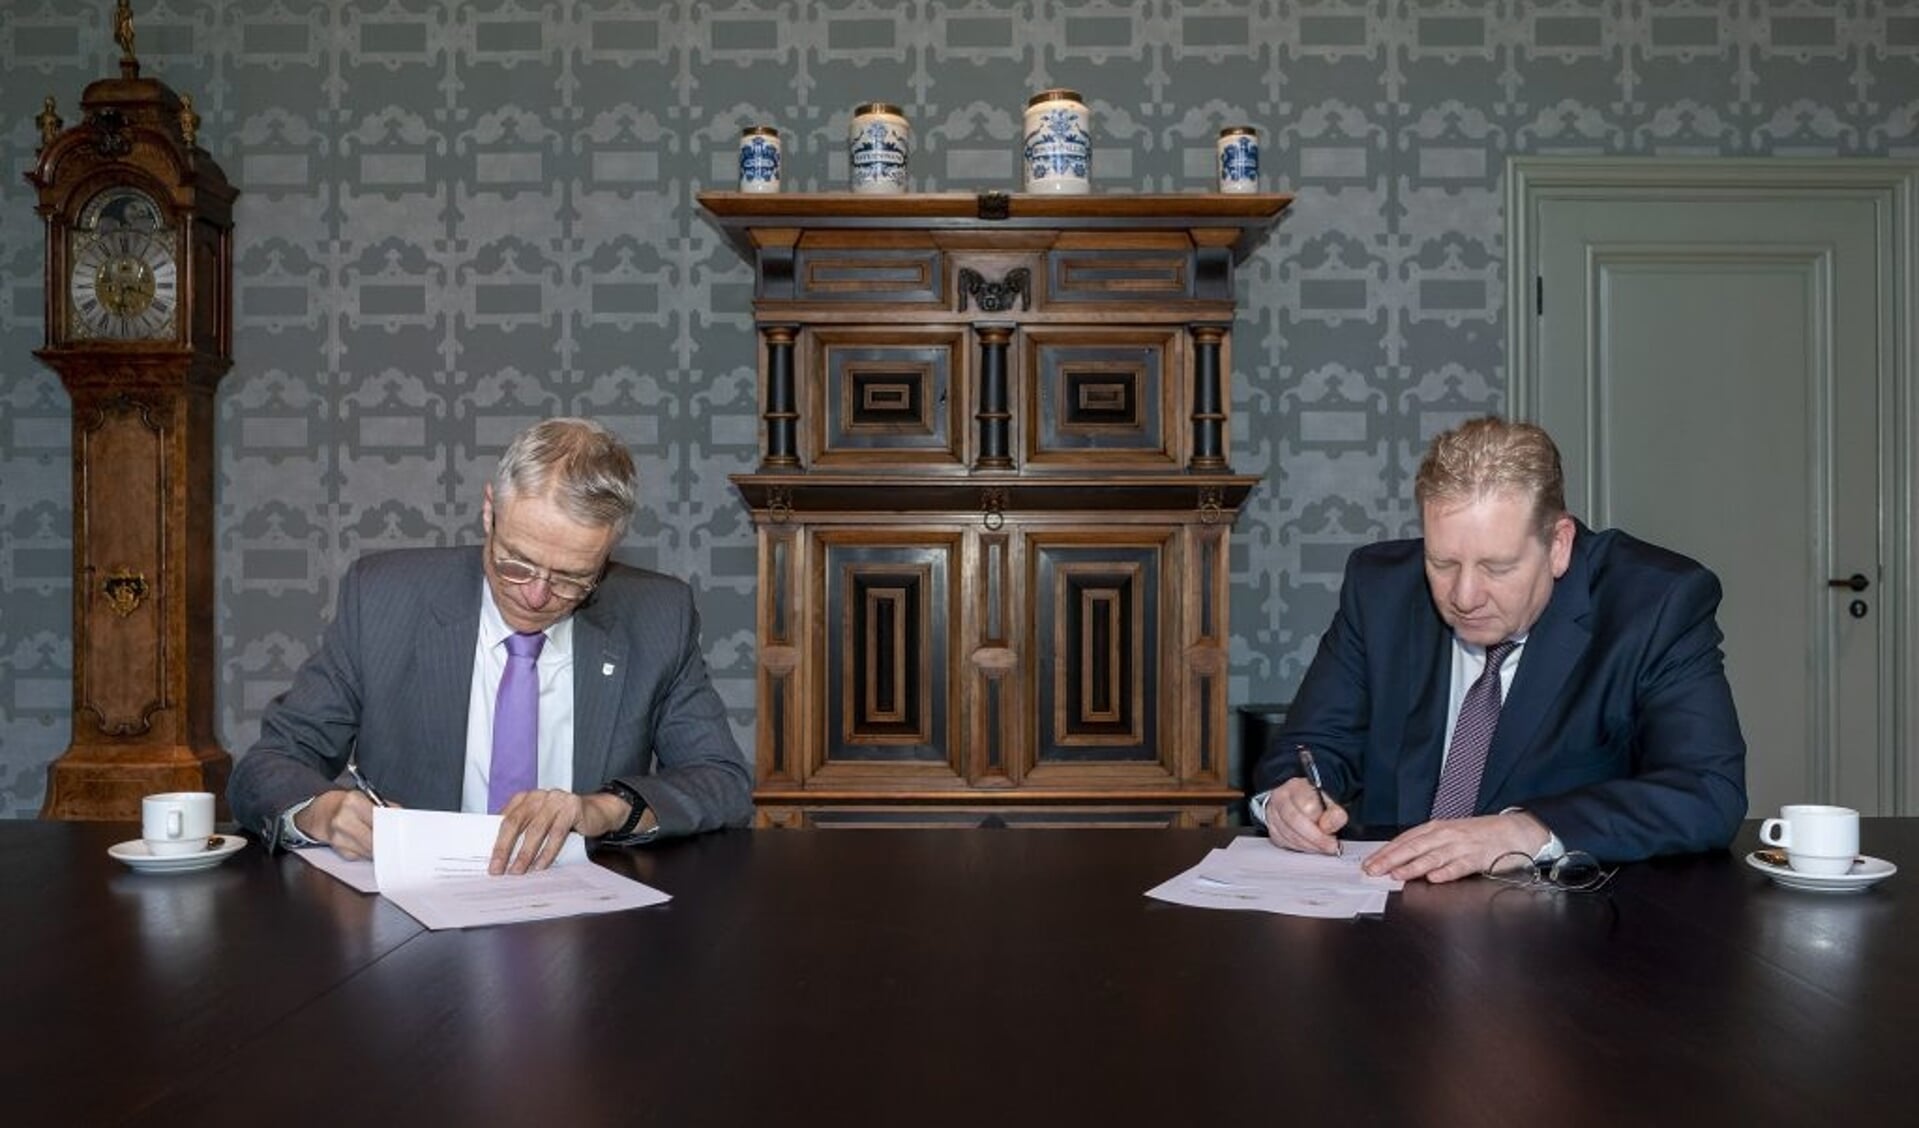 Ondertekening bestuursovereenkomst regionaal wooncentrum Picassolaan door wethouders Pieter Dijkman van Alkmaar (links) en Paul Slettenhaar van Castricum.